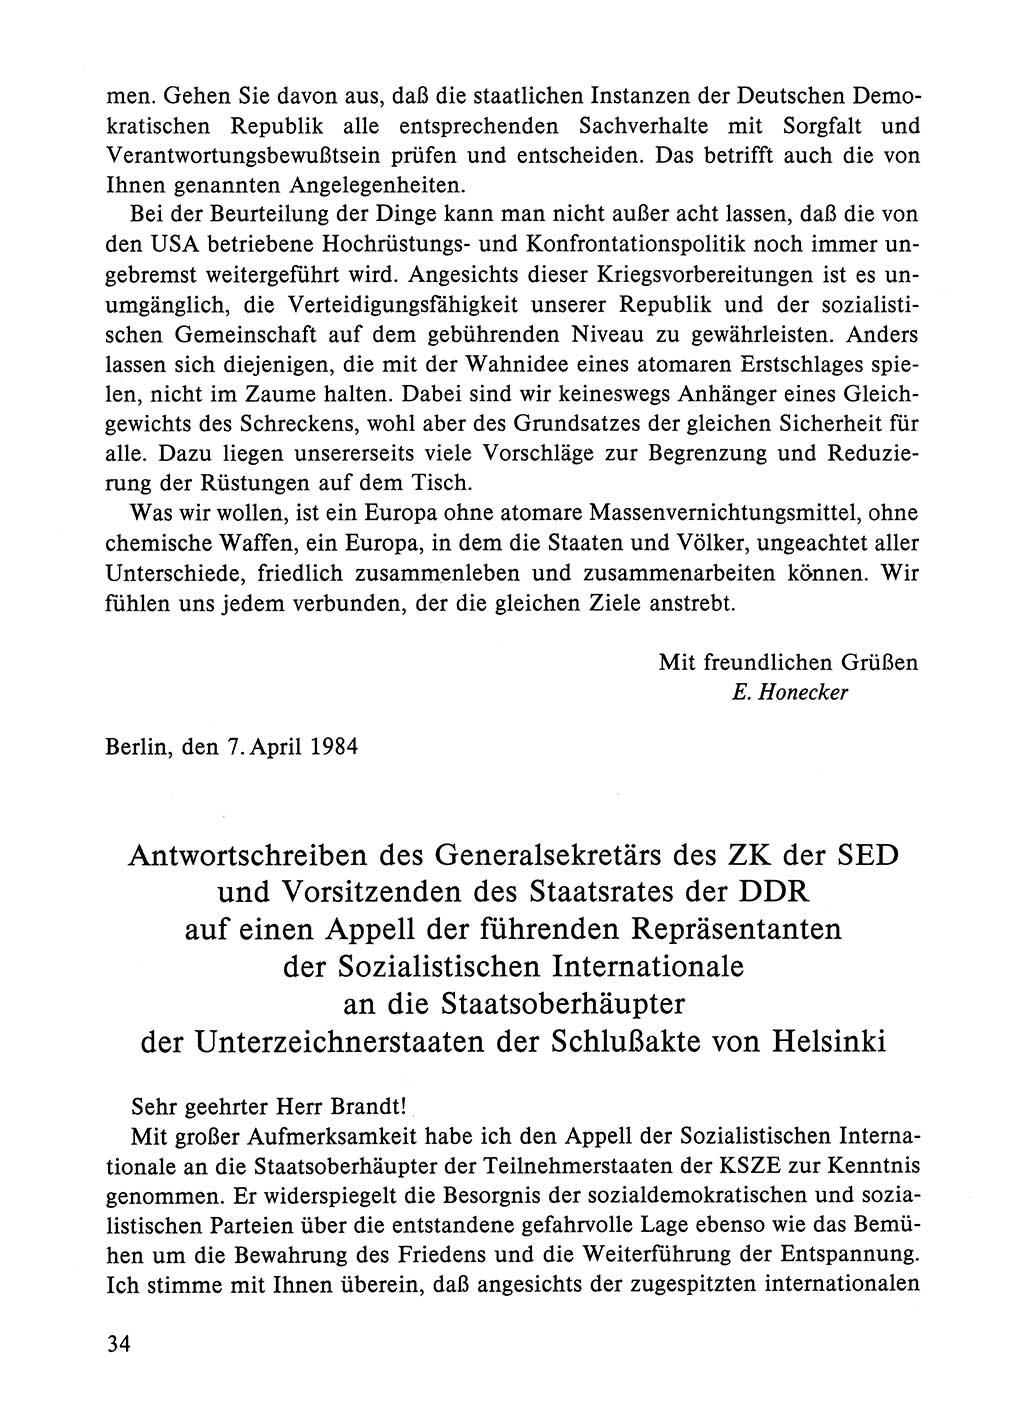 Dokumente der Sozialistischen Einheitspartei Deutschlands (SED) [Deutsche Demokratische Republik (DDR)] 1984-1985, Seite 34 (Dok. SED DDR 1984-1985, S. 34)